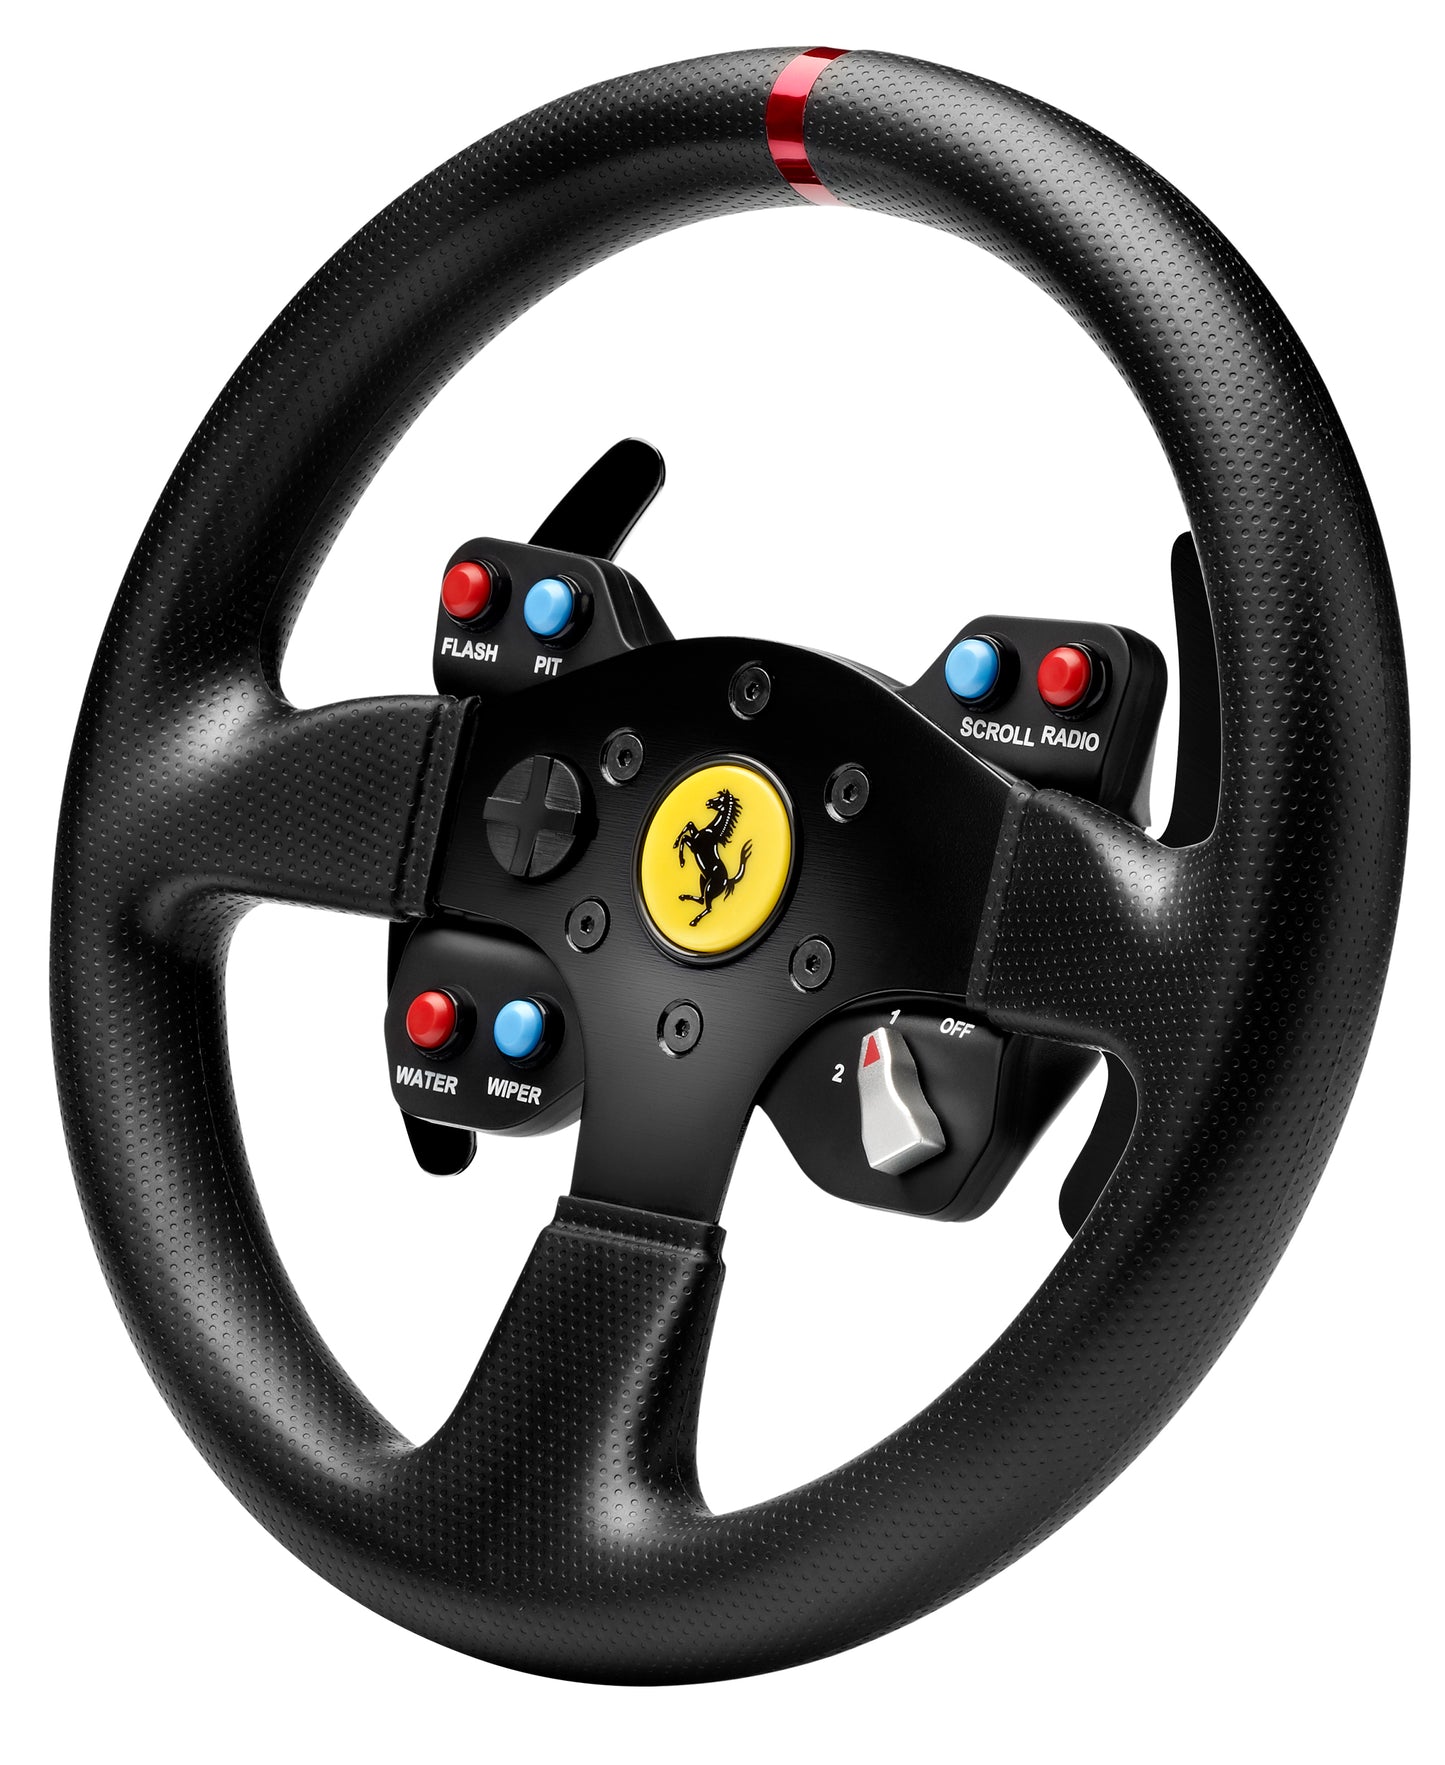 Ferrari GTE Wheel Add-on – Lenker-Replik des Ferrari 458 Challenge